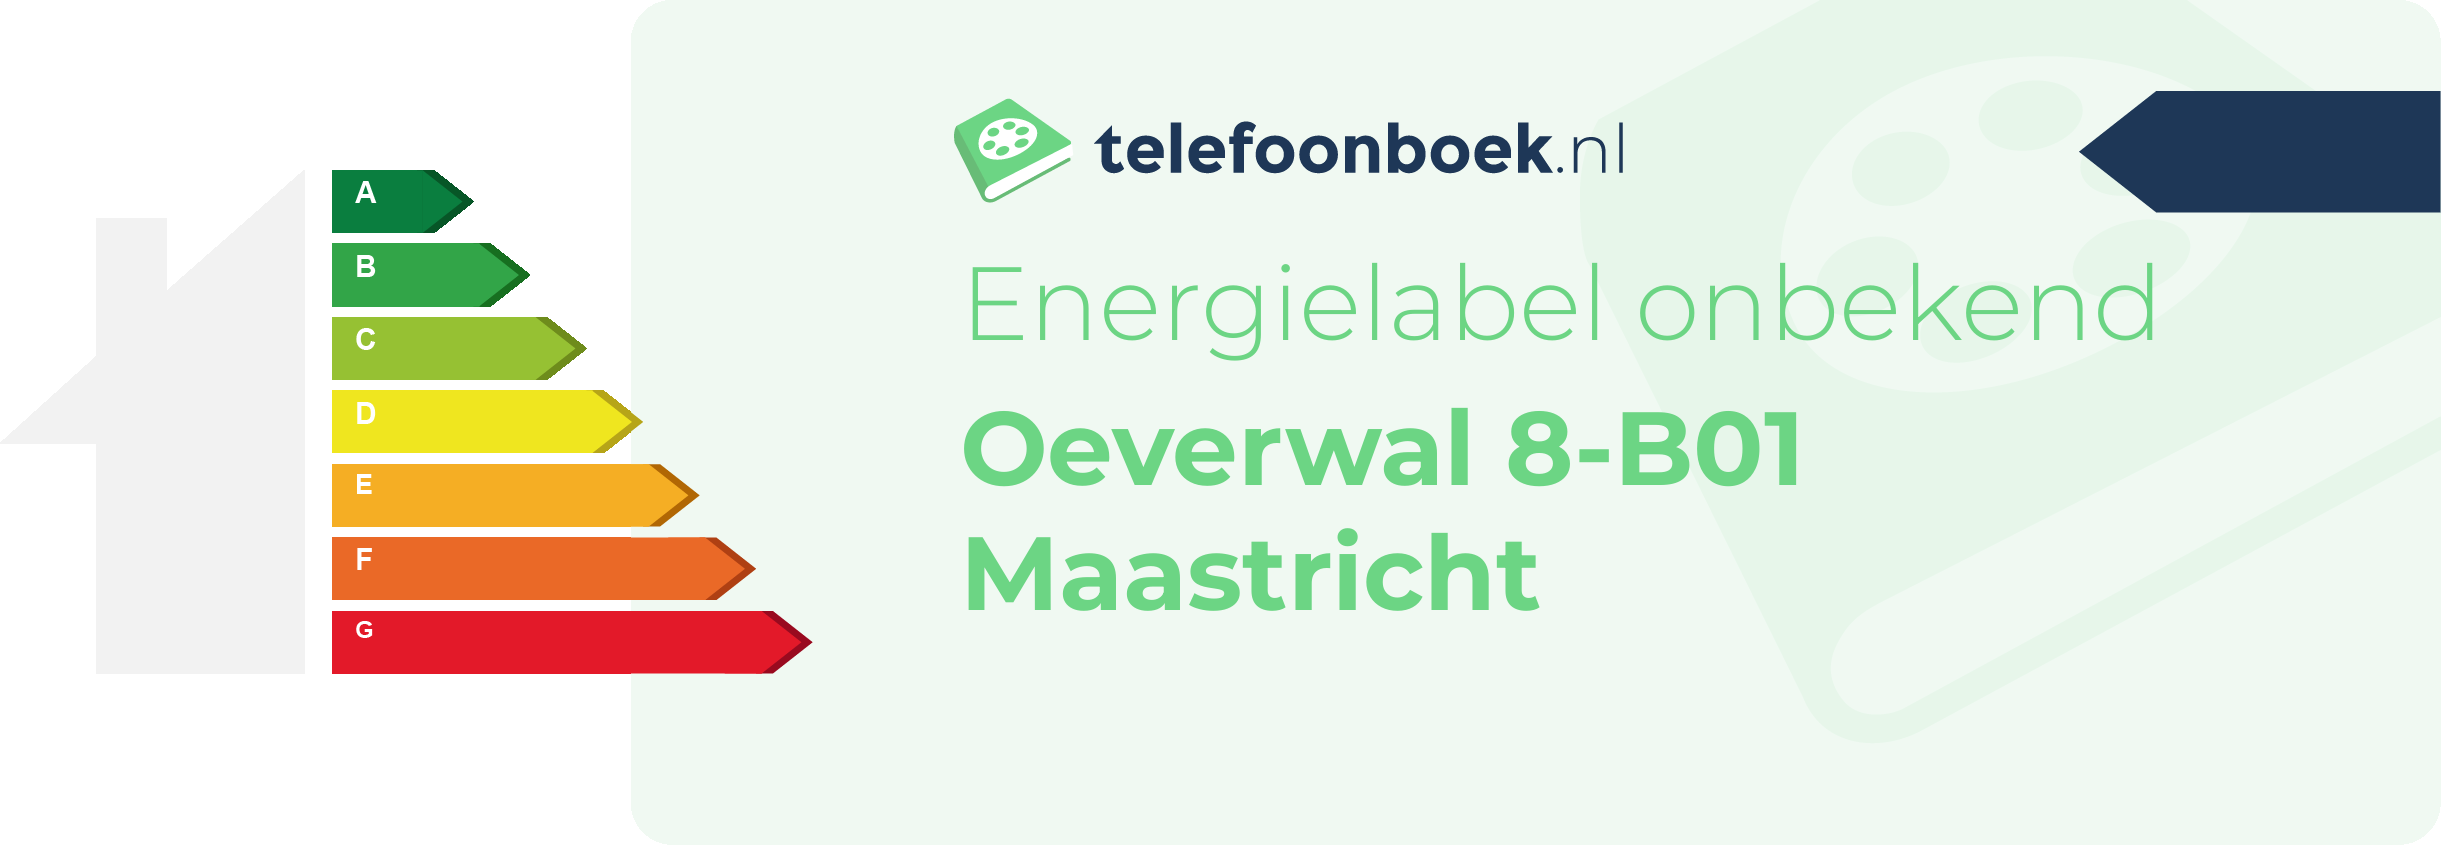 Energielabel Oeverwal 8-B01 Maastricht